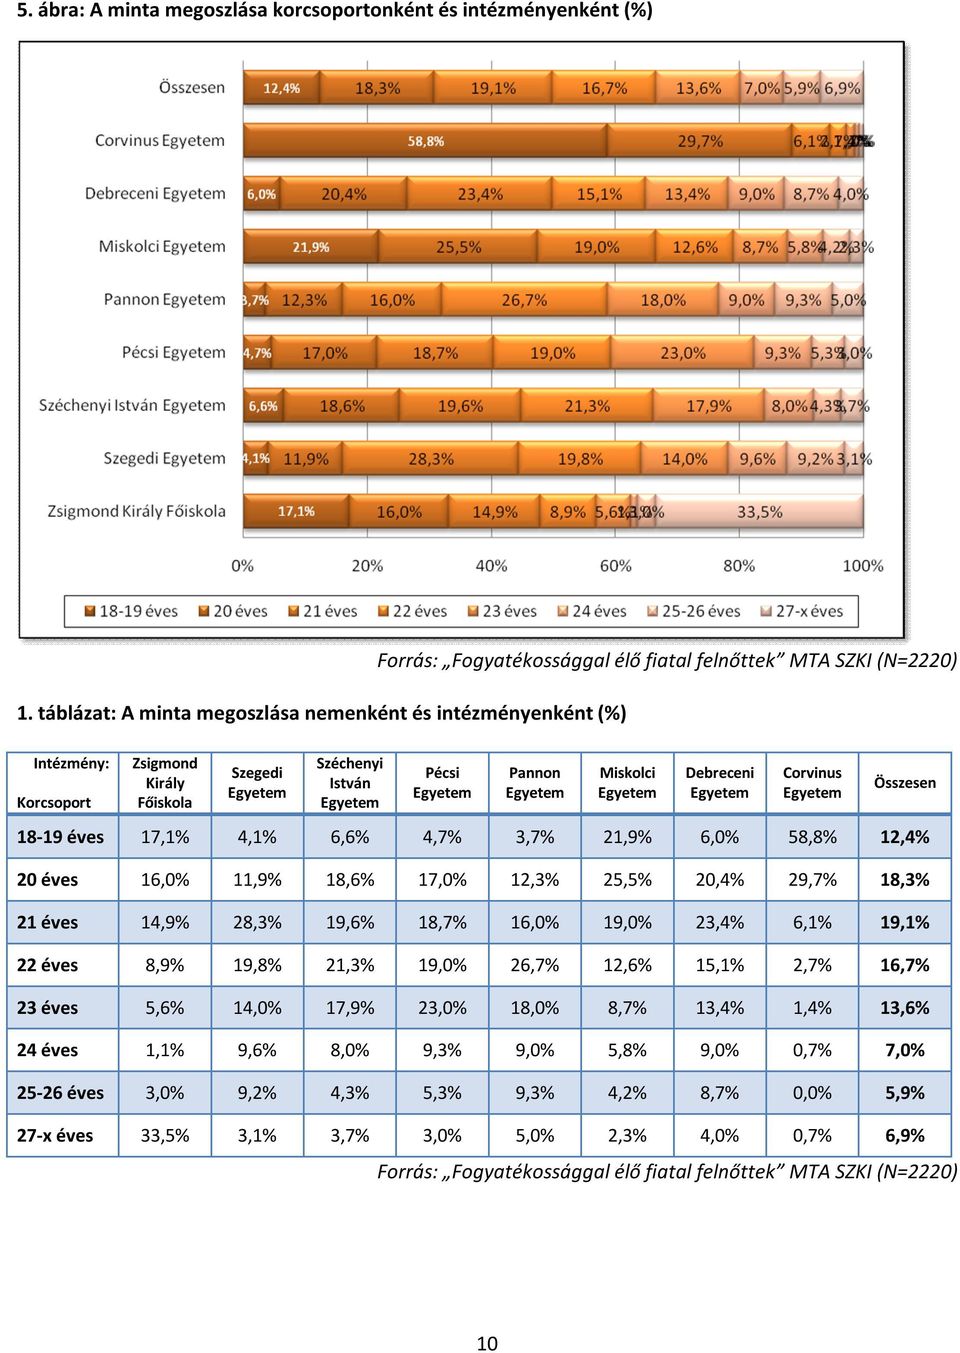 Egyetem Debreceni Egyetem Corvinus Egyetem Összesen 18-19 éves 17,1% 4,1% 6,6% 4,7% 3,7% 21,9% 6,0% 58,8% 12,4% 20 éves 16,0% 11,9% 18,6% 17,0% 12,3% 25,5% 20,4% 29,7% 18,3% 21 éves 14,9% 28,3%